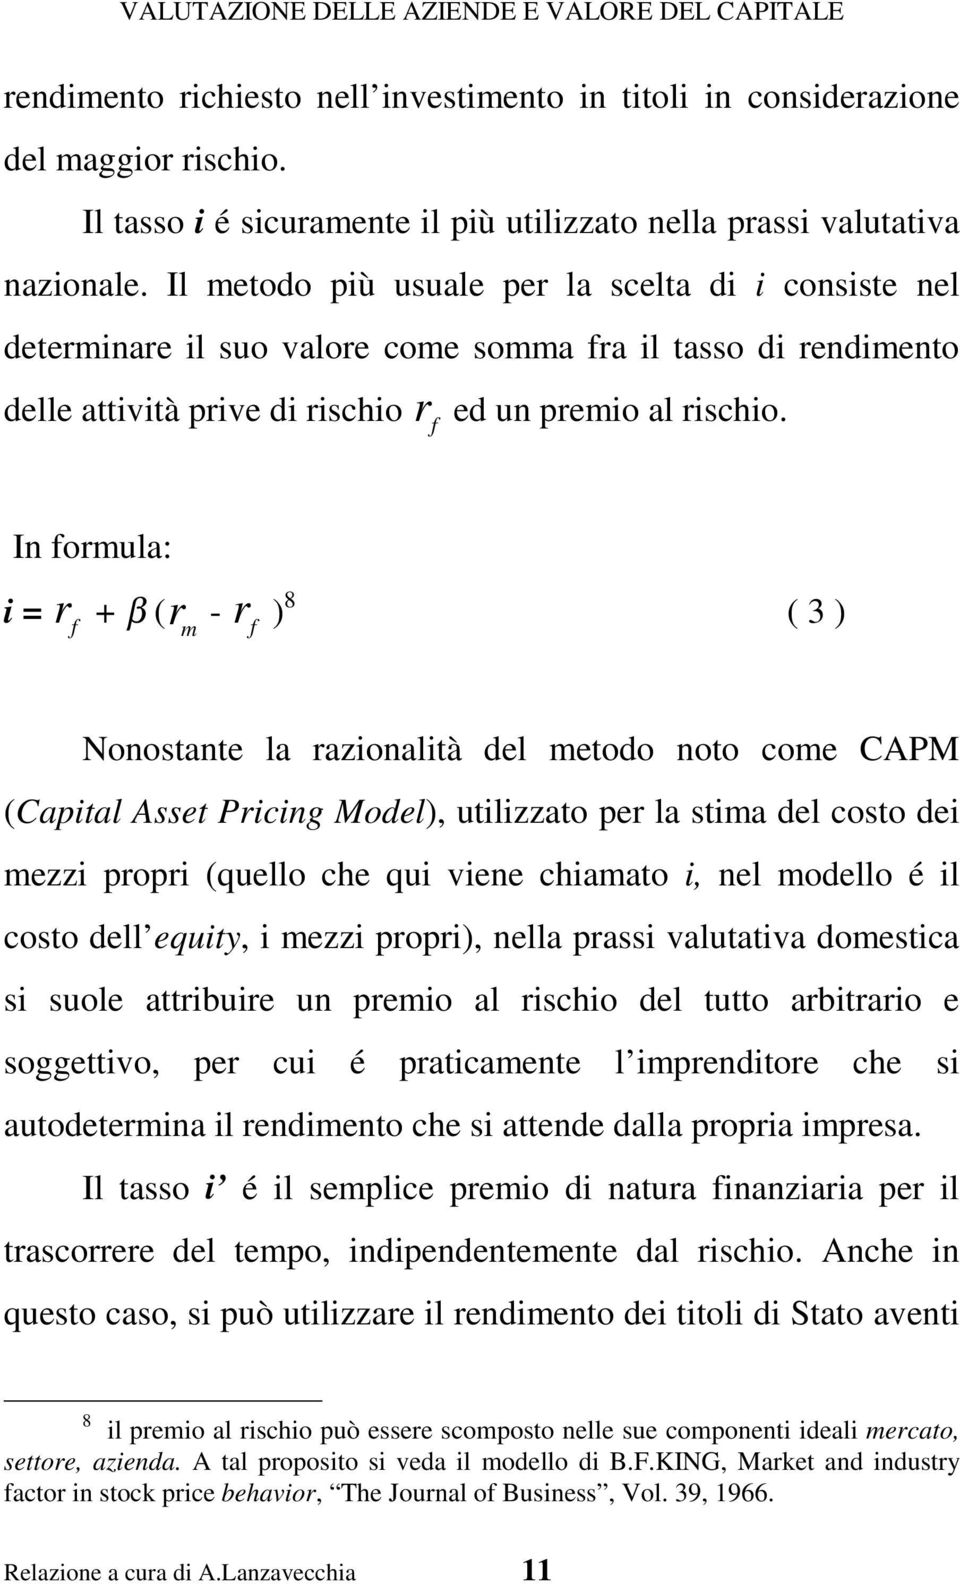 In formula: i = r f + β (r m - r f ) 8 ( 3 ) Nonostante la razionalità del metodo noto come CAPM (Capital Asset Pricing Model), utilizzato per la stima del costo dei mezzi propri (quello che qui